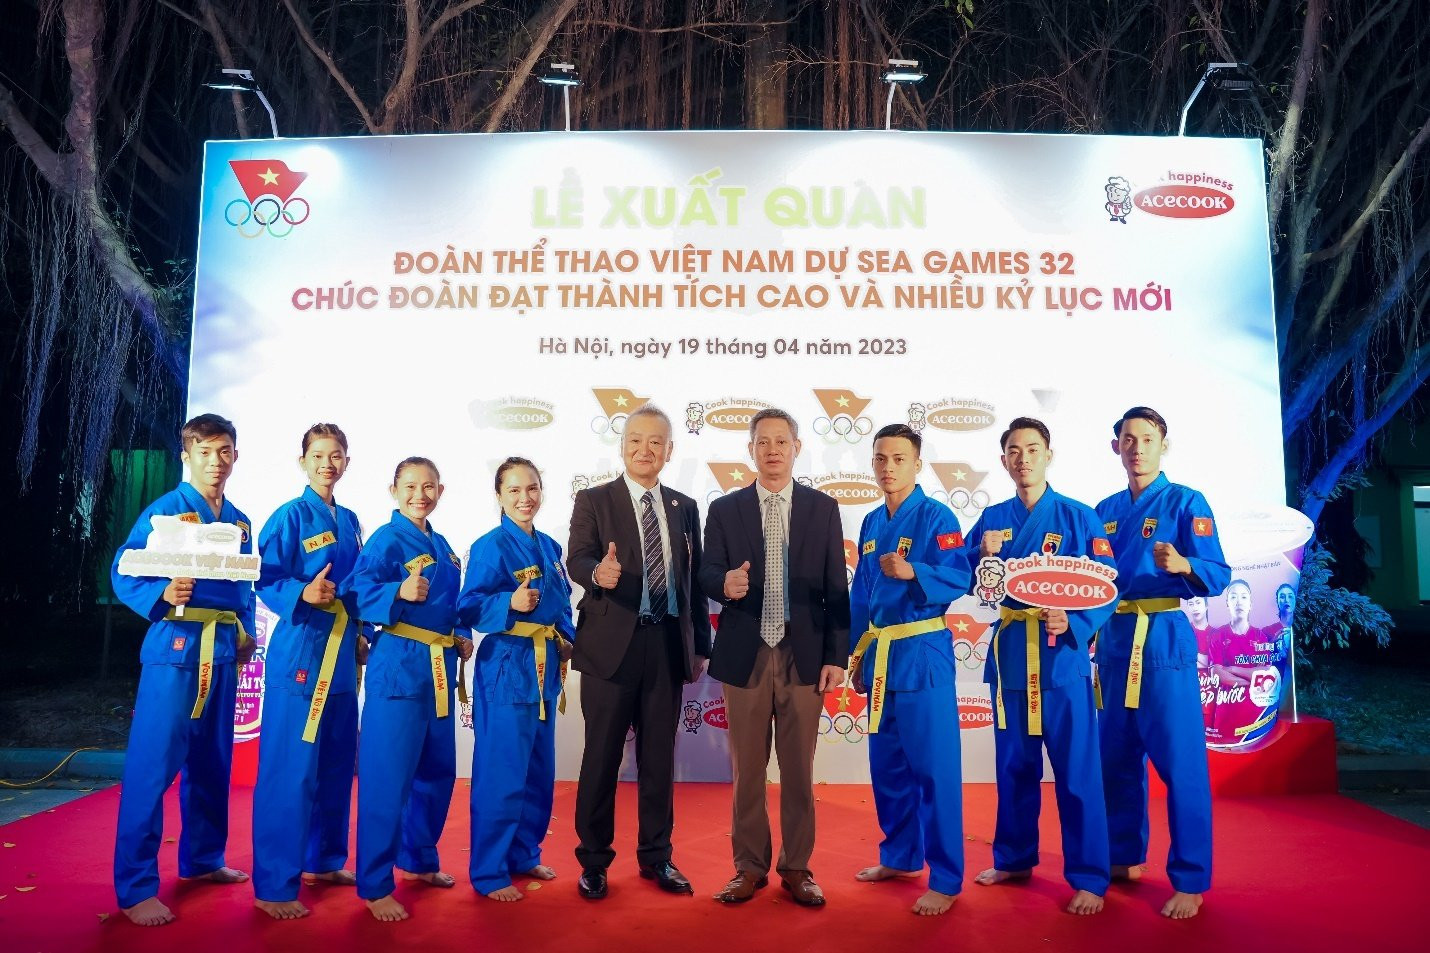 ACECOOK Việt Nam đồng hành cùng Đoàn thể thao Việt Nam dự SEA Games 32 - 5